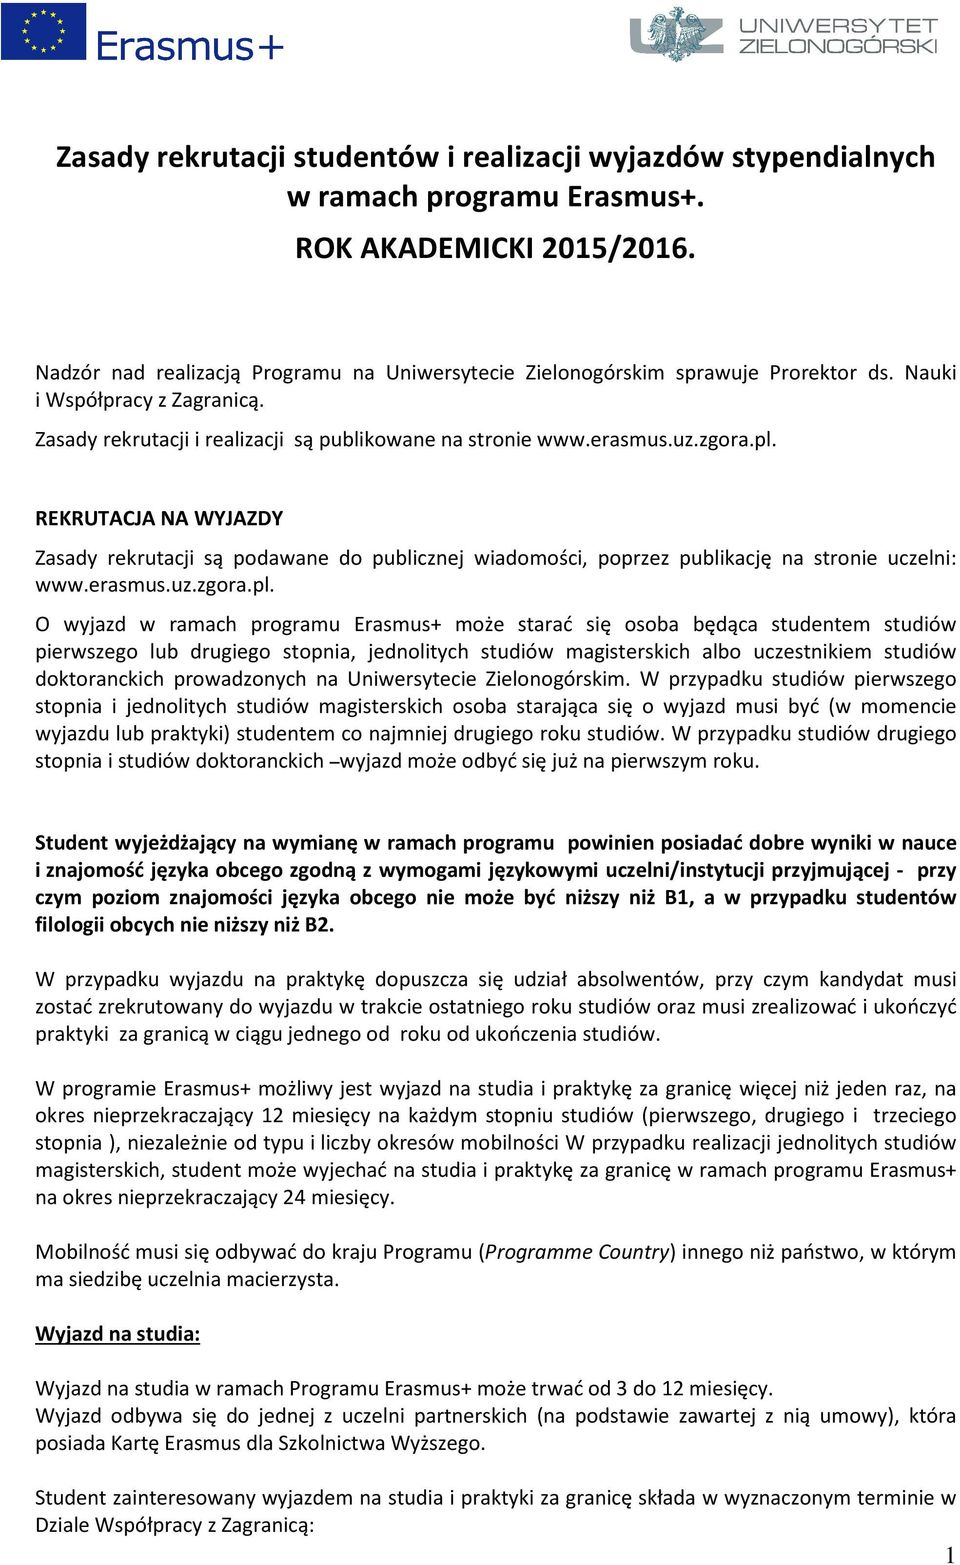 REKRUTACJA NA WYJAZDY Zasady rekrutacji są podawane do publicznej wiadomości, poprzez publikację na stronie uczelni: www.erasmus.uz.zgora.pl.